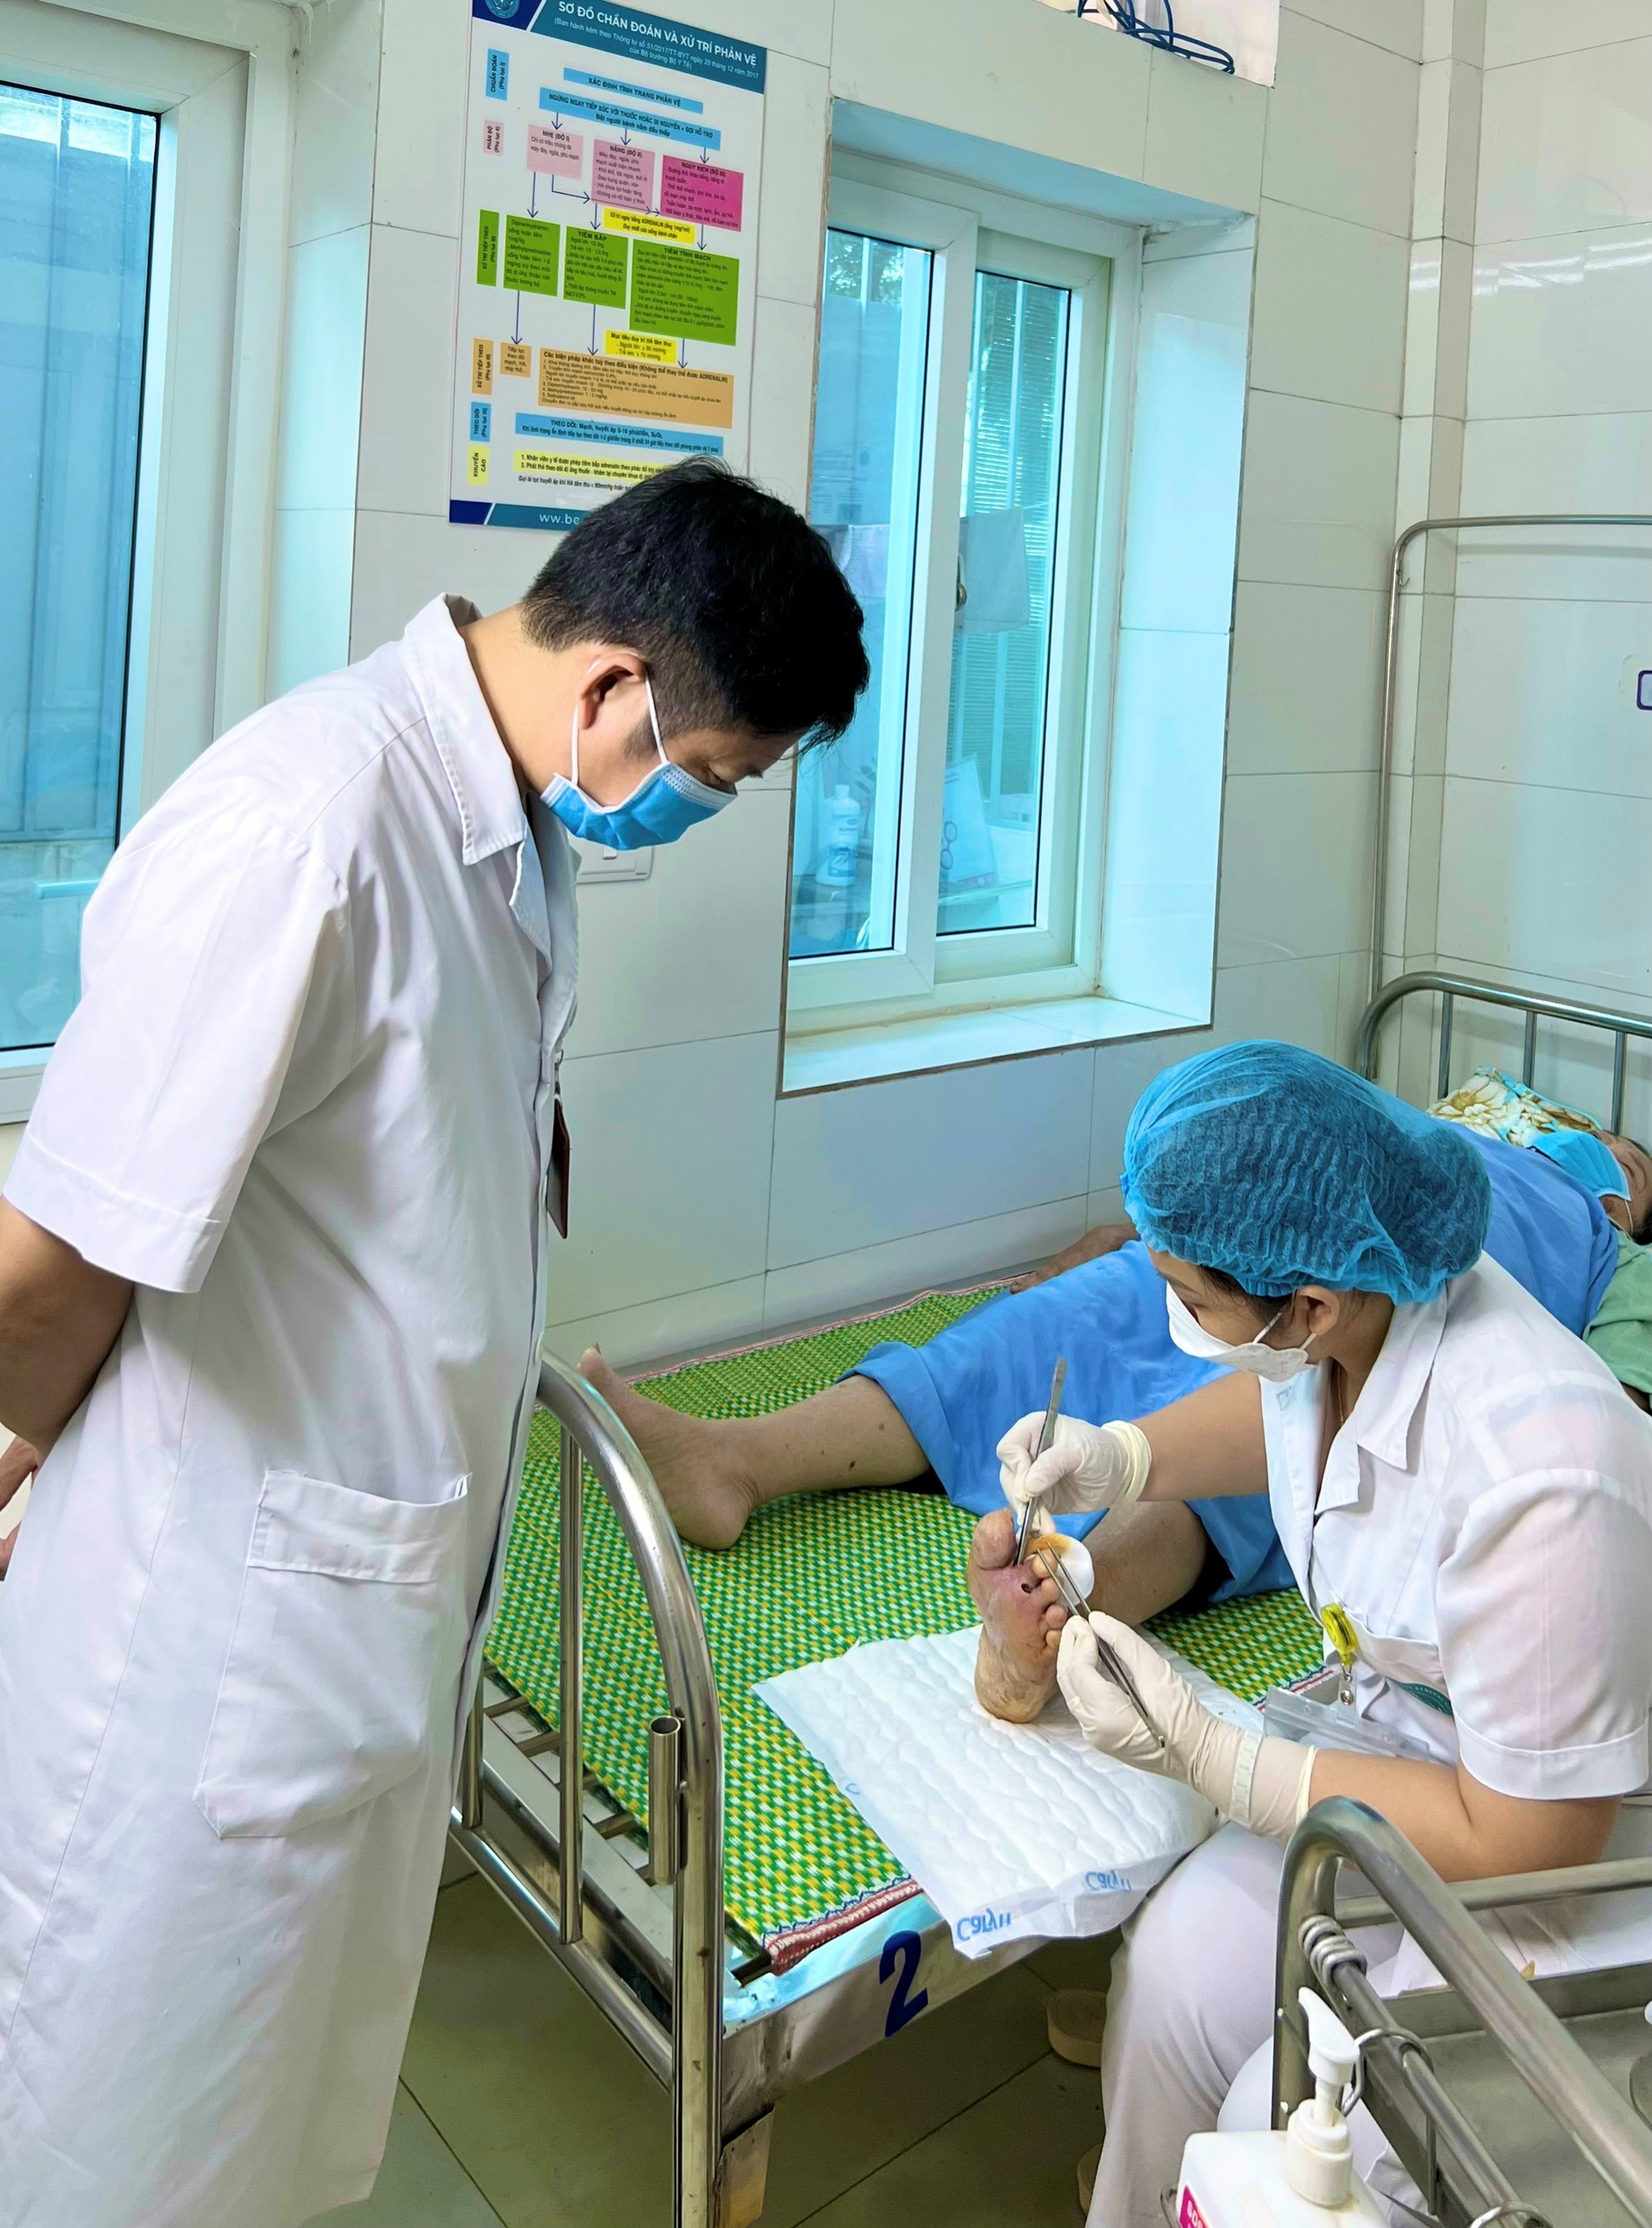 Bệnh nhân tiểu đường nhập viện trong tình trạng ngón chân hoại tử, bốc mùi hôi thối do tự ý đắp thuốc nam